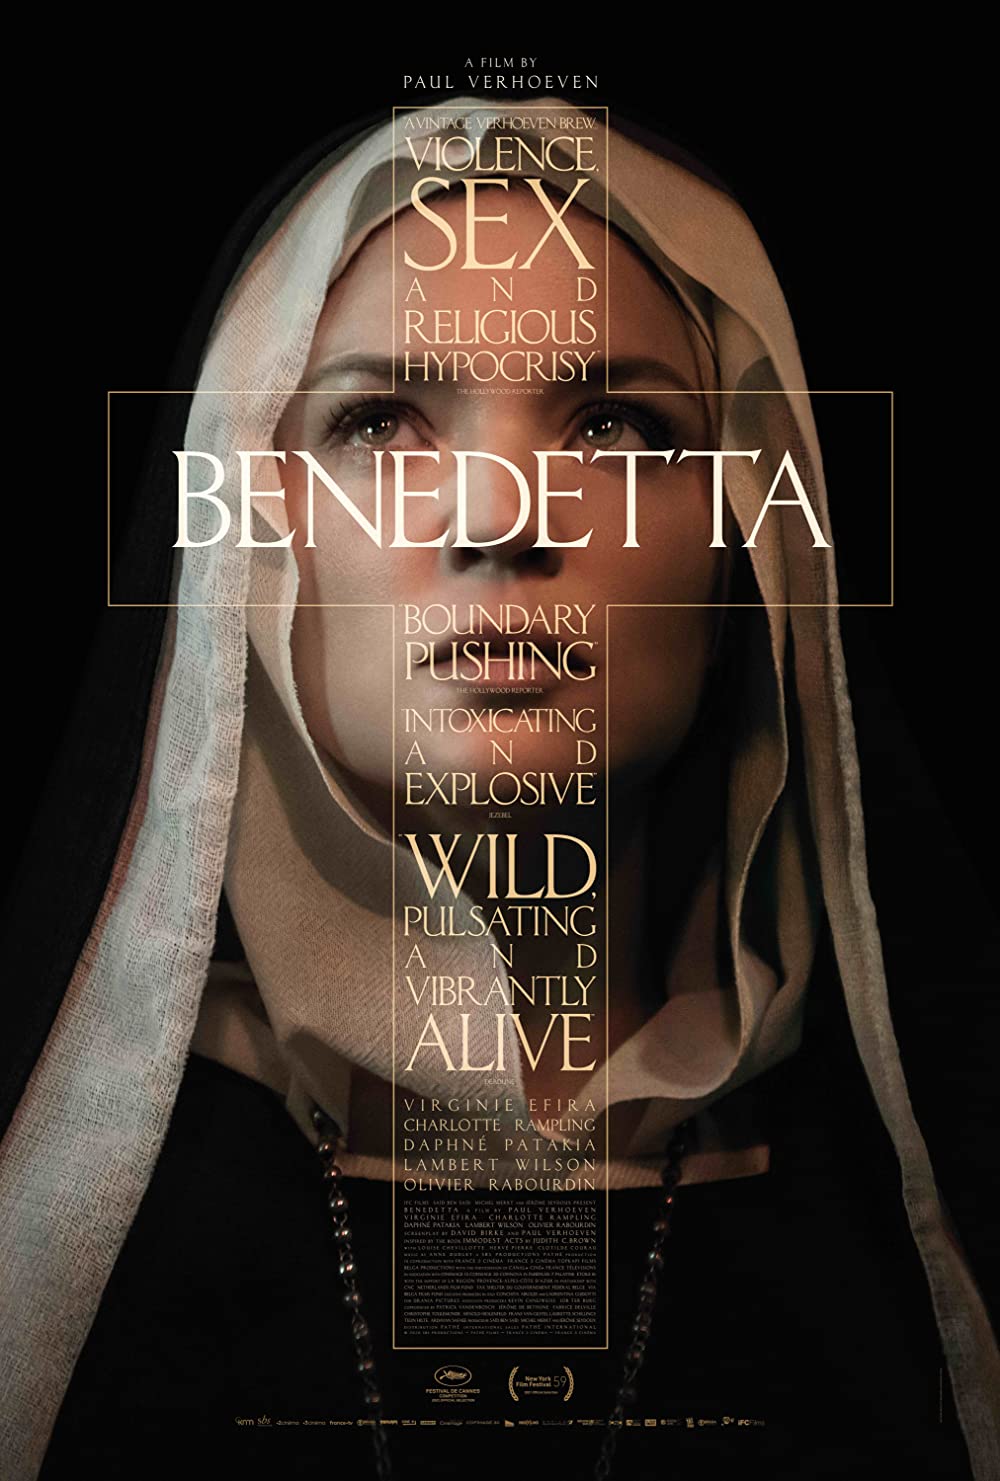 Câu Chuyện về Benedetta – Benedetta